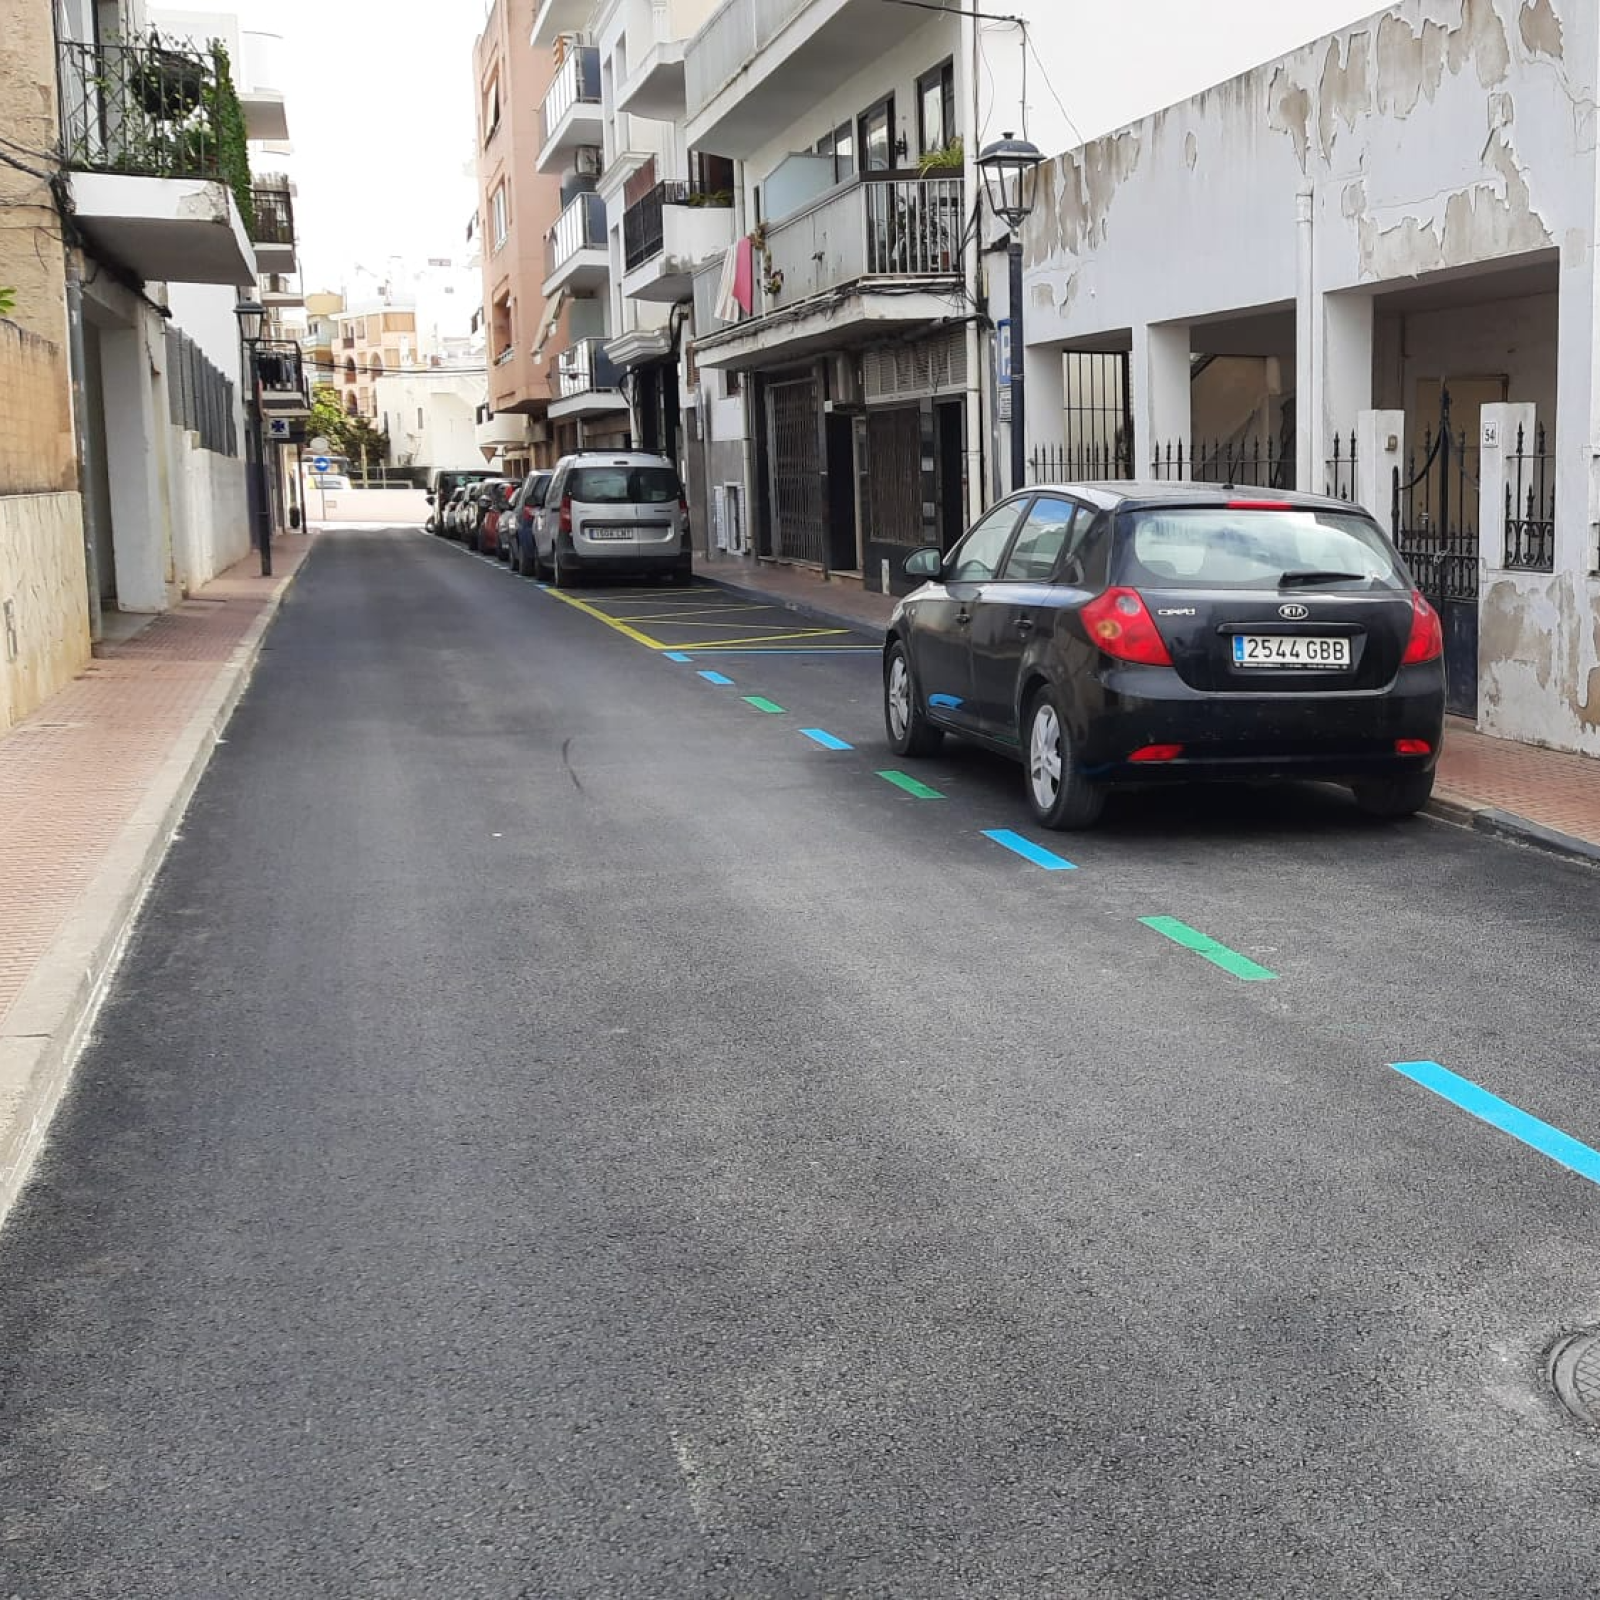 L'Ajuntament inicia la segona fase de l'asfaltat de carrers del nucli de Santa Eulària dilluns que ve 8 de gener